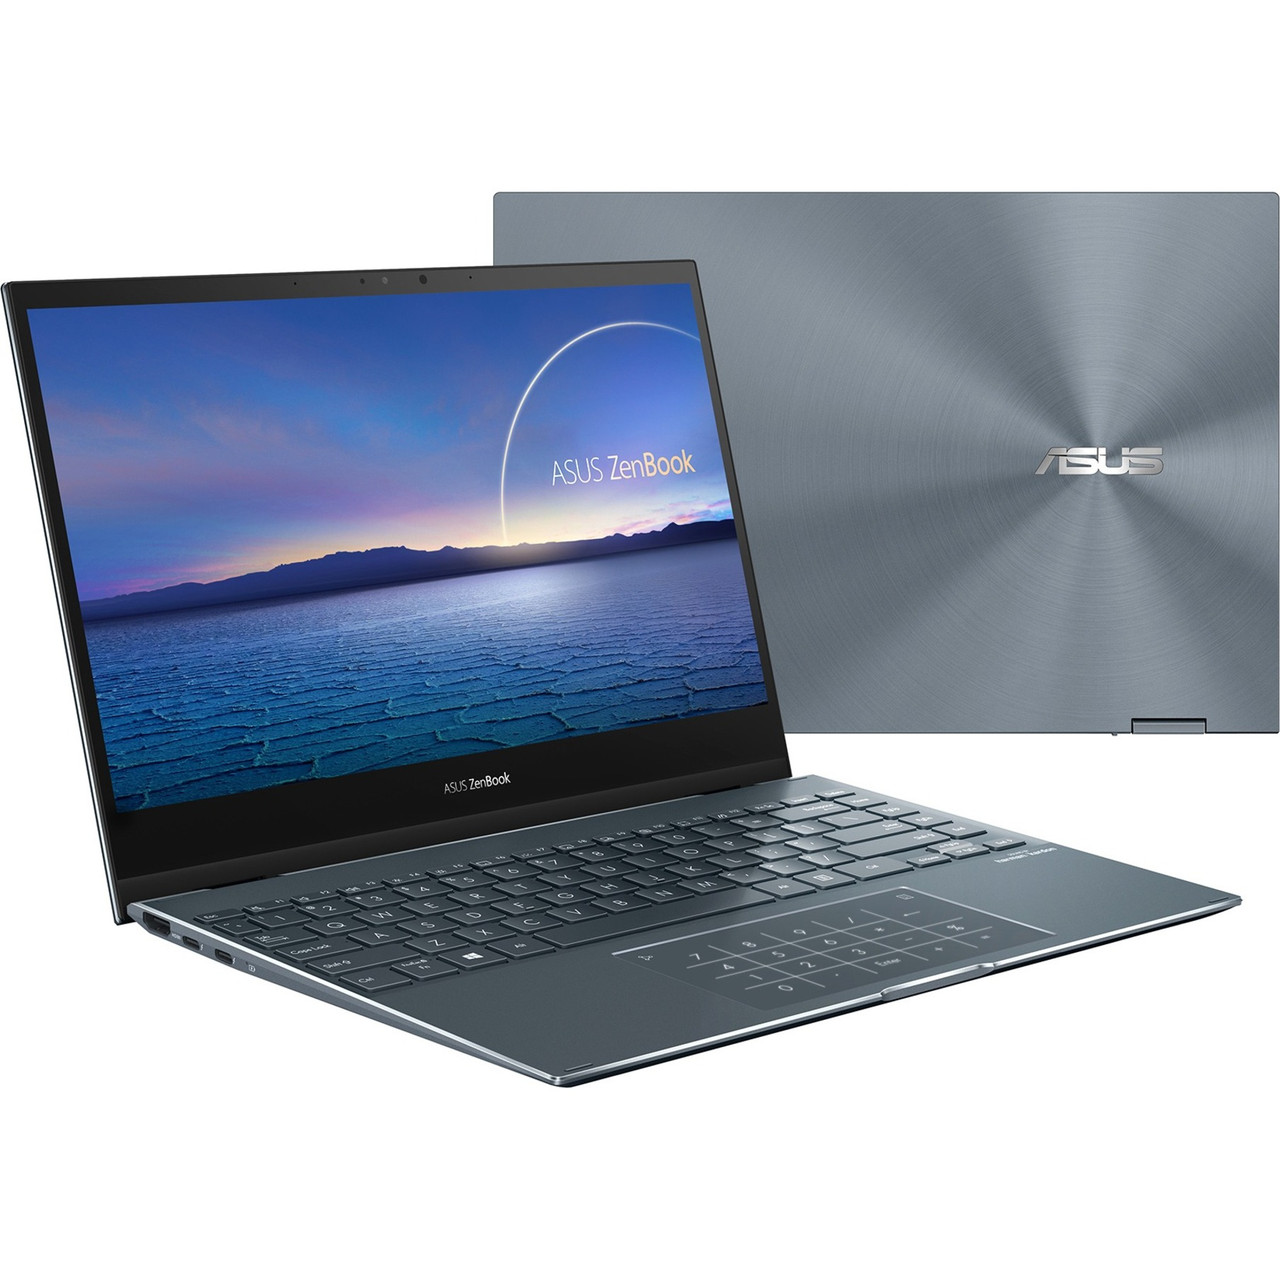 Asus ZenBook Flip 13 UX363 UX363EA-XH71T 13.3" Touchscreen Convertible Notebook - Full HD - 1920 x 1080 - Intel Core i7 11th Gen i7-1165G7 Quad-core (4 Core) 2.80 GHz - 16 GB Total RAM - 512 GB SSD - UX363EA-XH71T